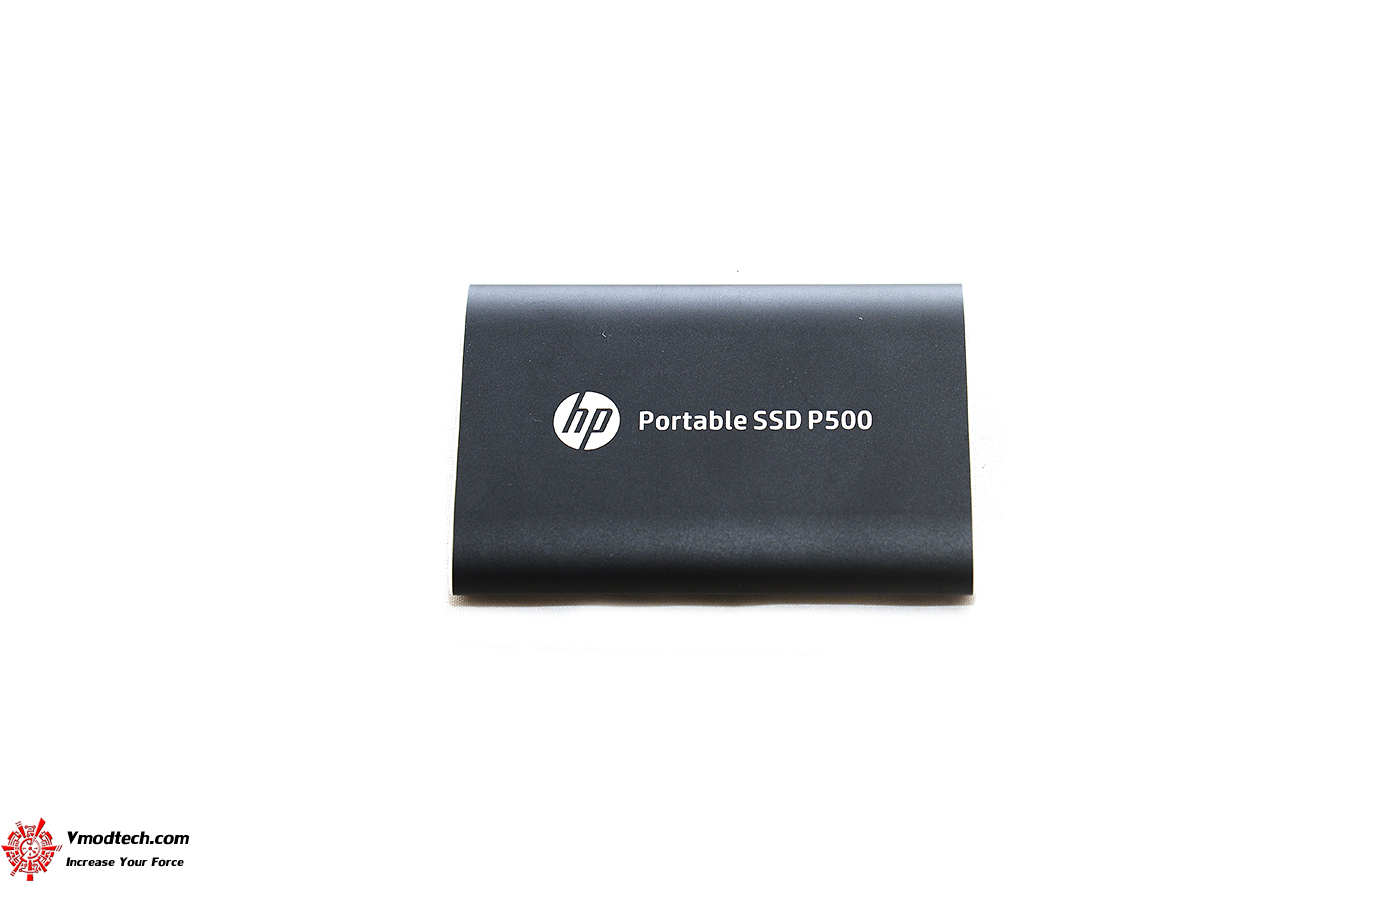 dsc 9025 HP Portable SSD P500 250GB Review